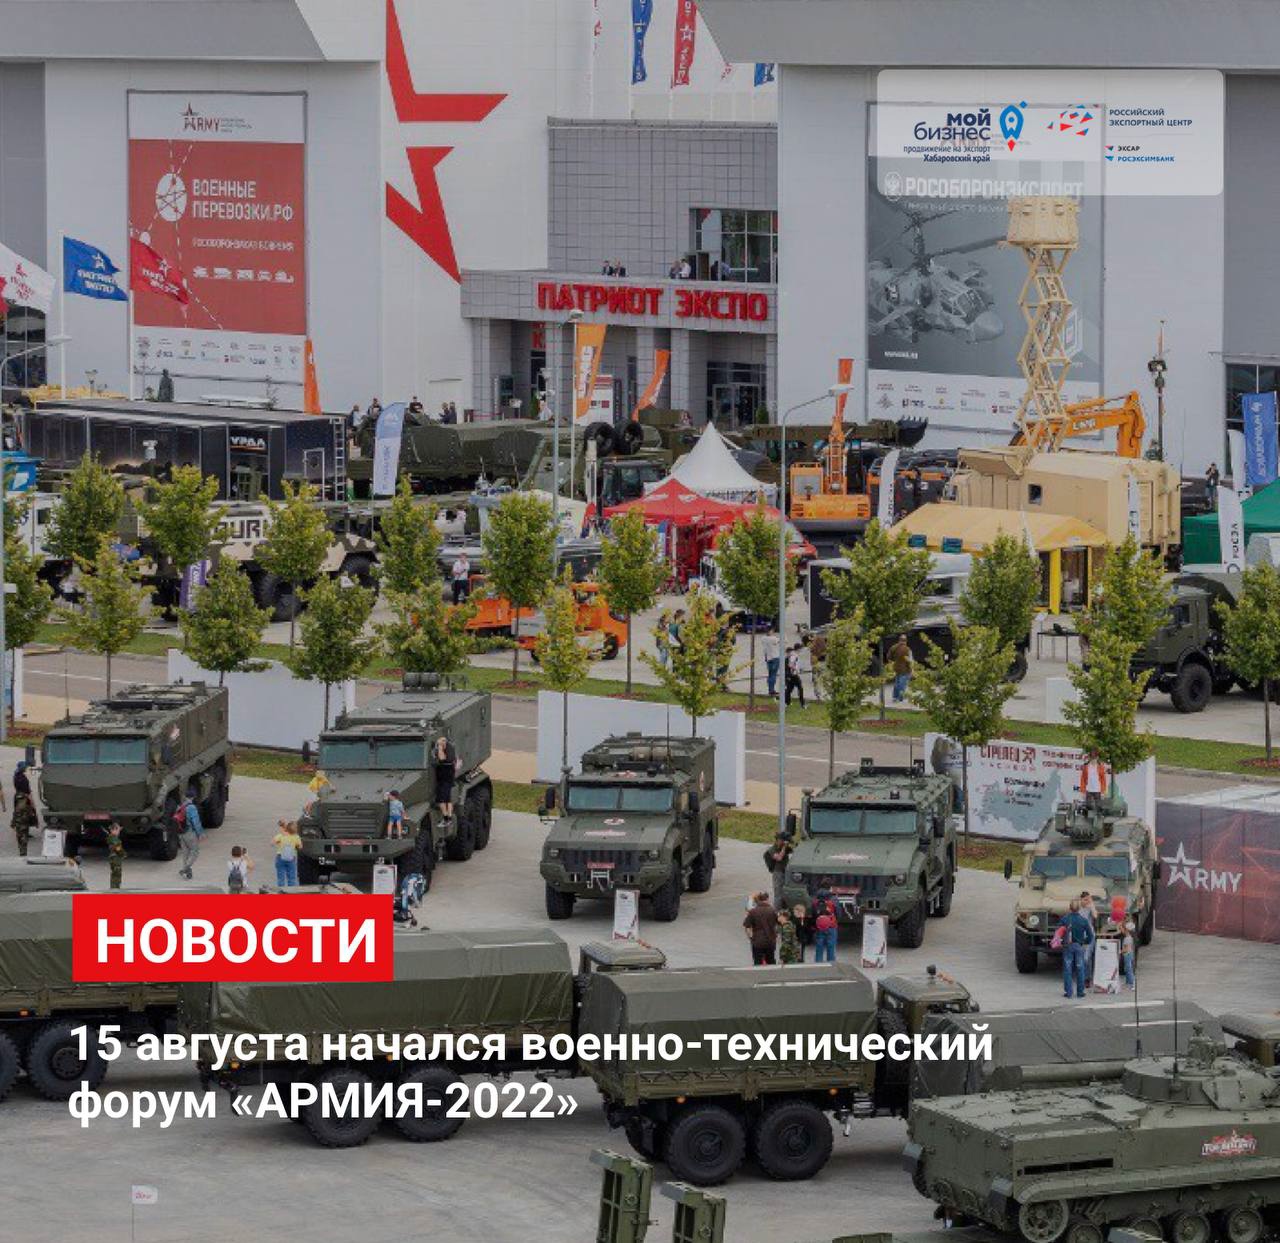 Военно-технический форум "АРМИЯ-2022"